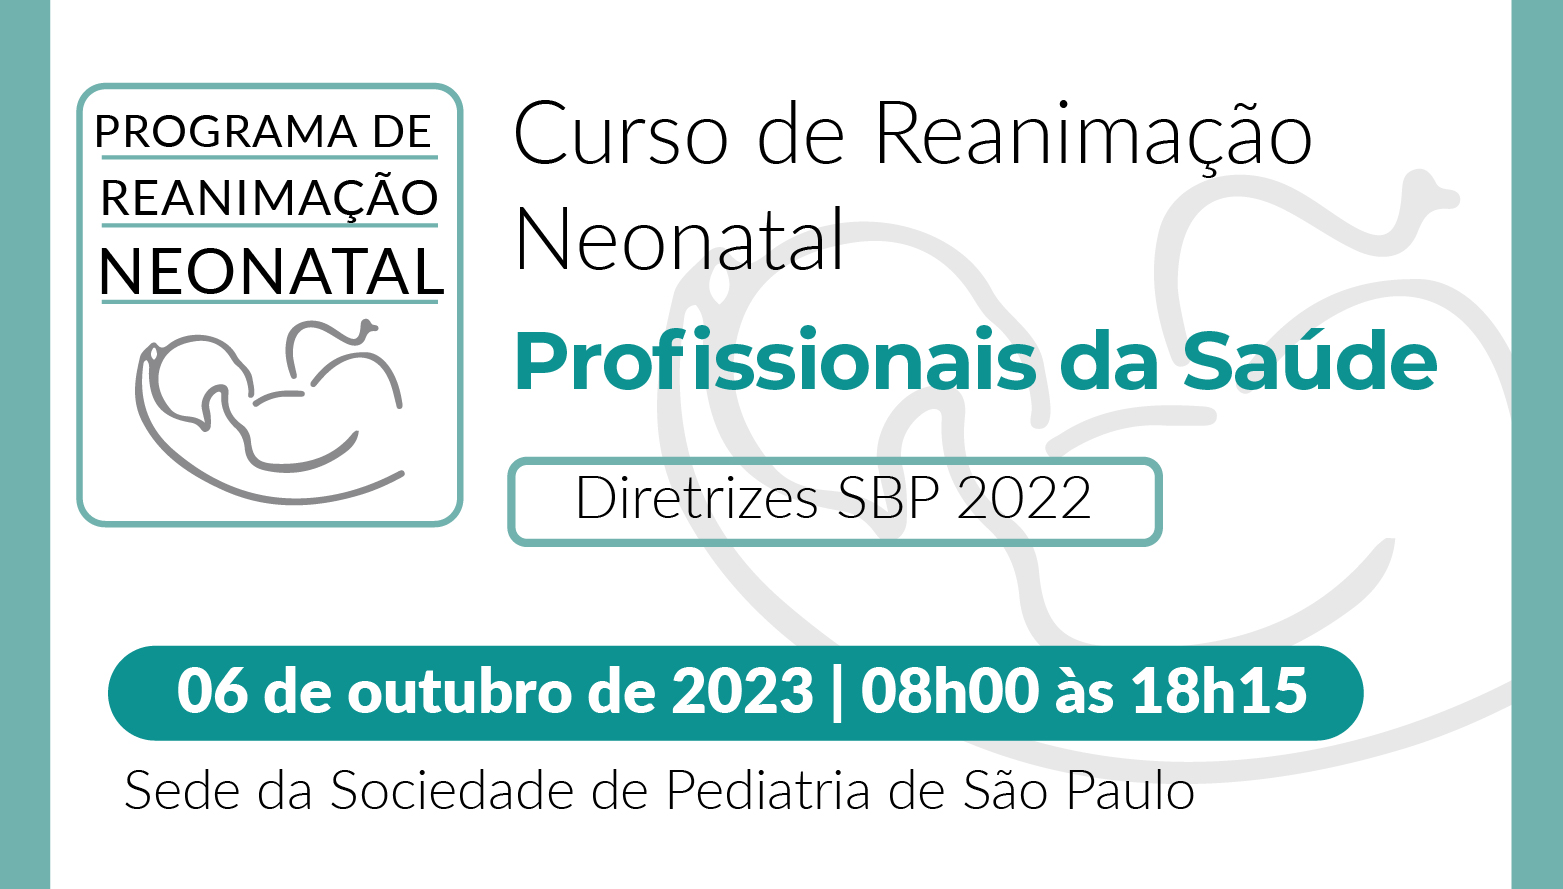 Reanimação Neonatal para Profissionais de Saúde - Diretrizes SBP 2022 - R50/23